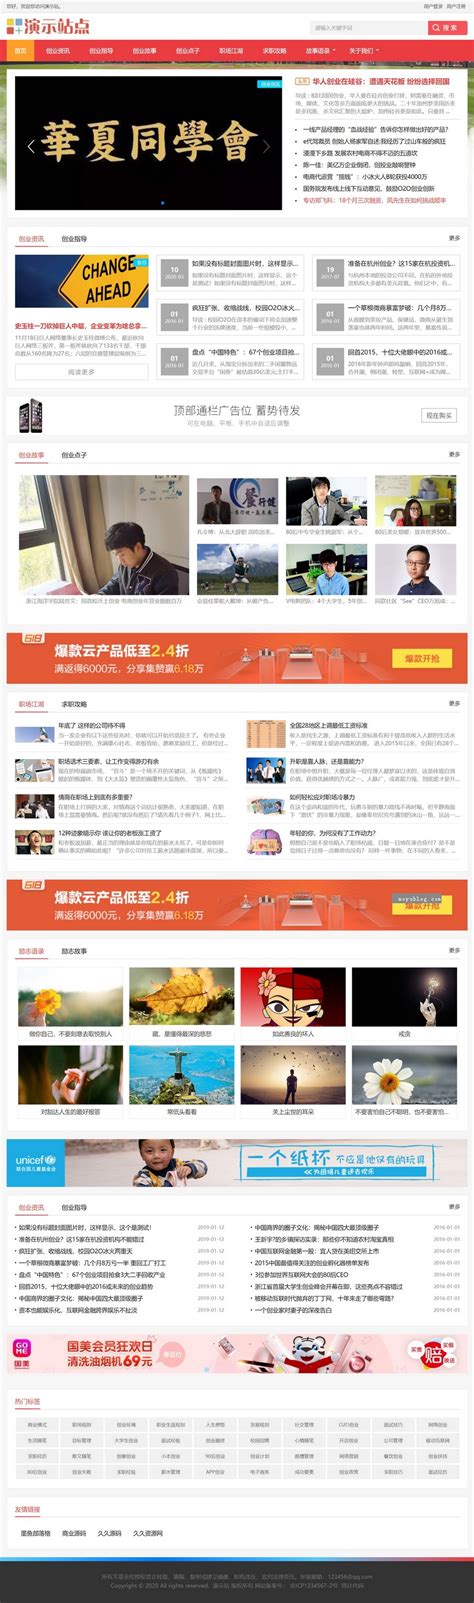 仿杨青青个人博客模板响应式自适应HTML5整站帝国cms模板 - 素材火